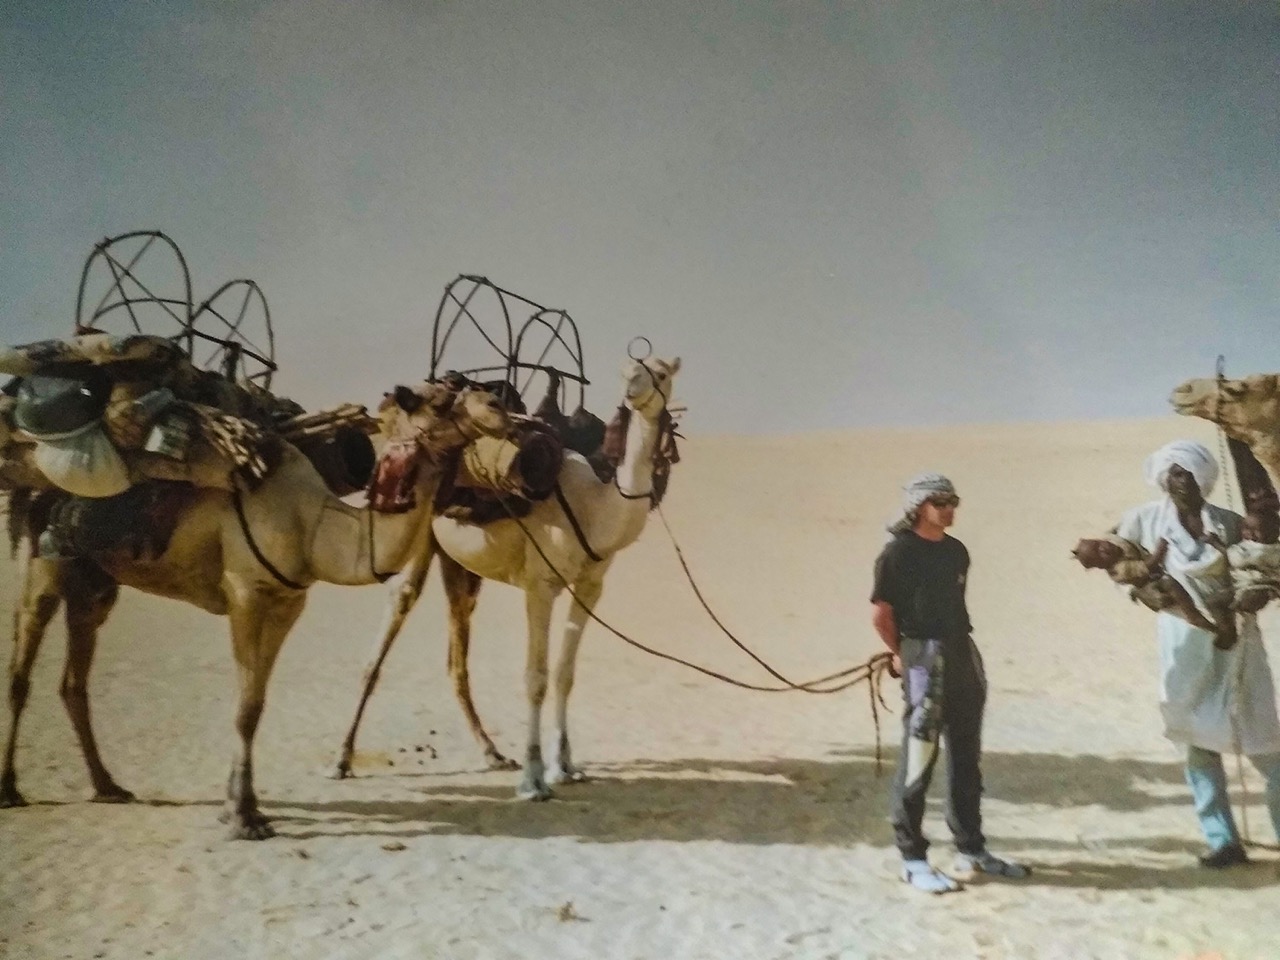 Michel, en randonnée dans le désert algérien, en 1992 - ©Michel Millard